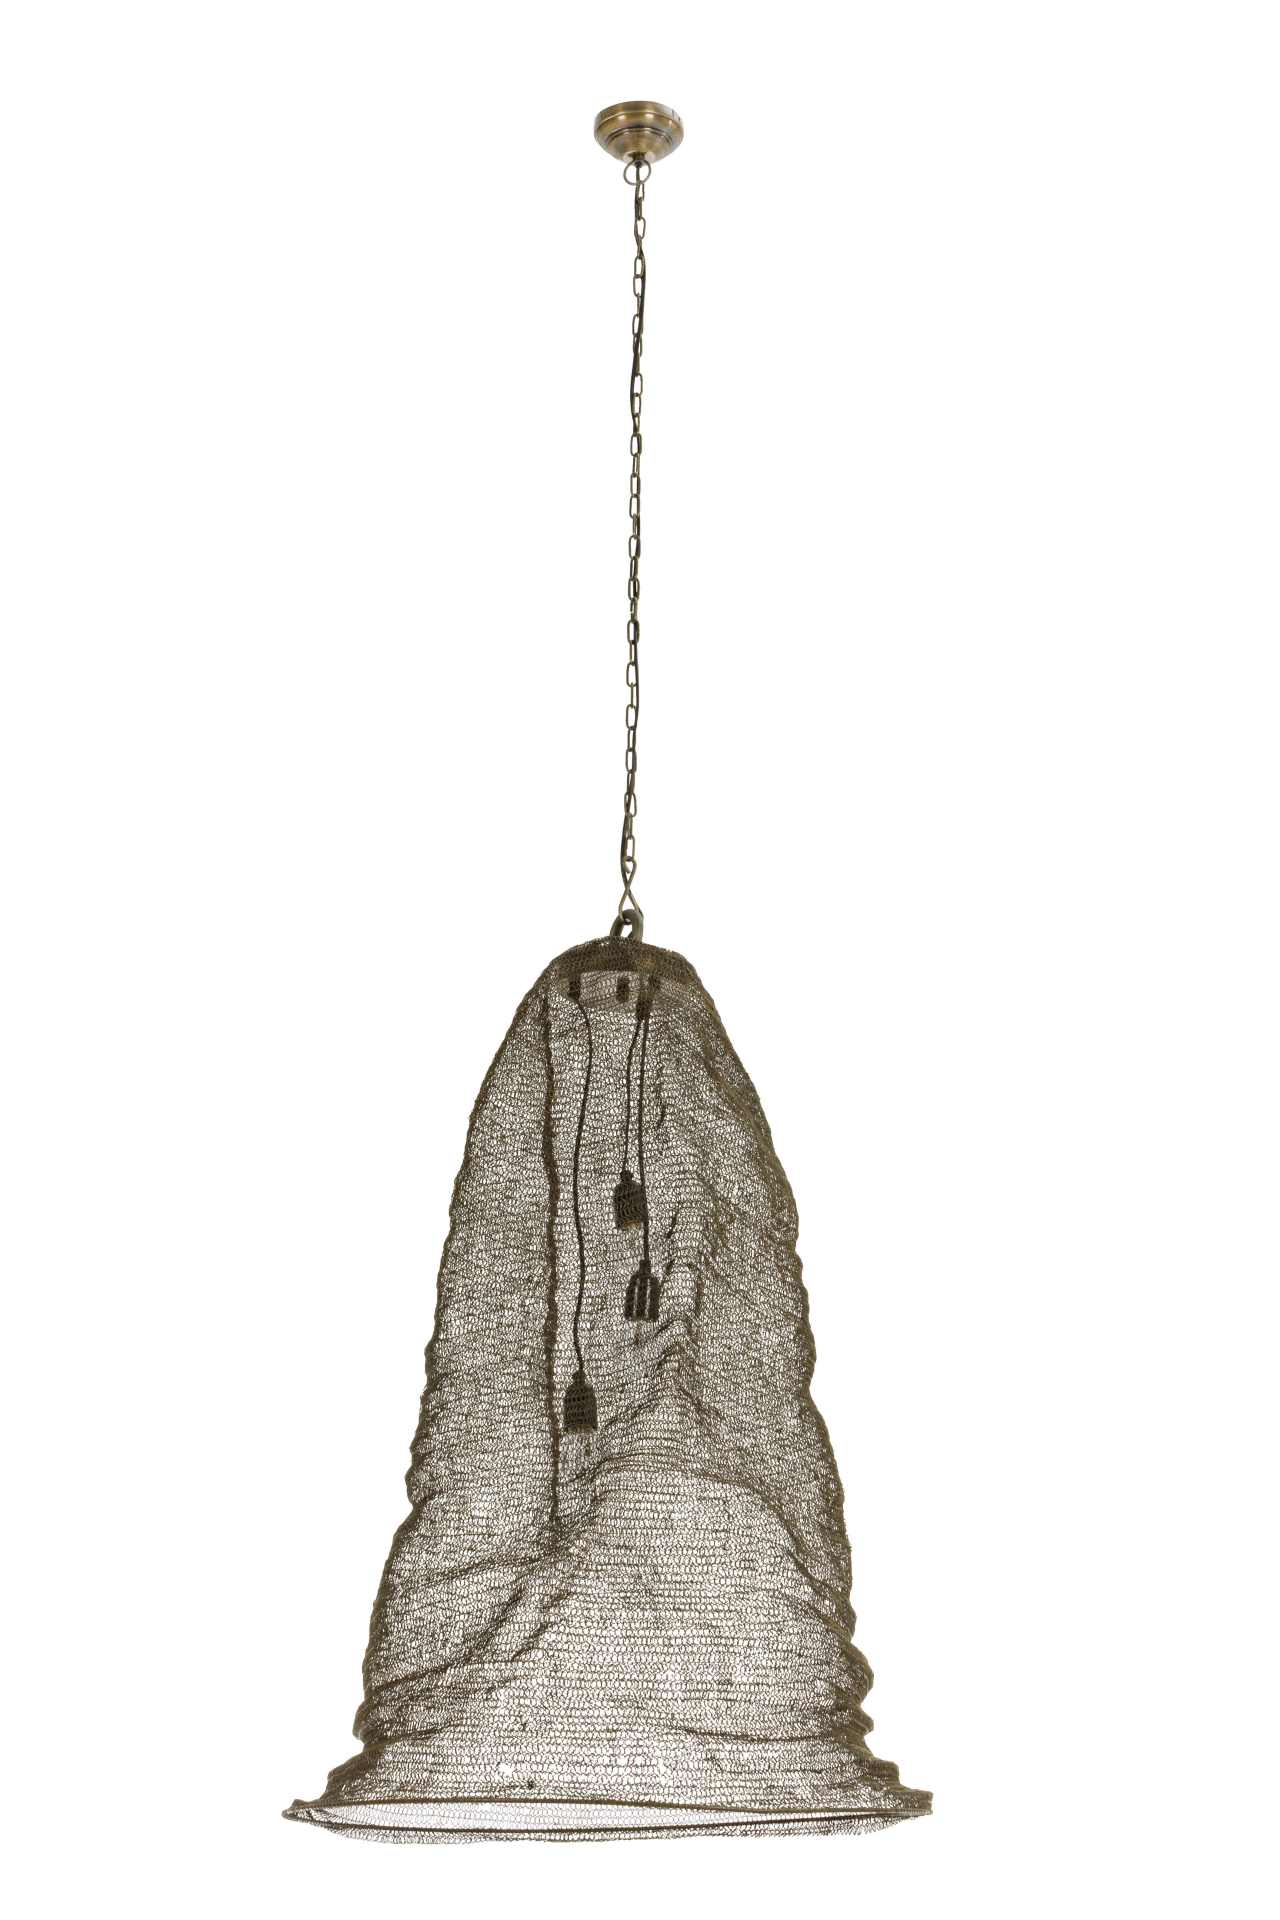 Die Hängeleuchte Amish überzeugt mit ihrem klassischen Design. Gefertigt wurde sie aus Metall, welches einen Messing Farbton besitzt.Der Lampenschirm ist auch aus Metall. Die Lampe besitzt eine Höhe von 90 cm.